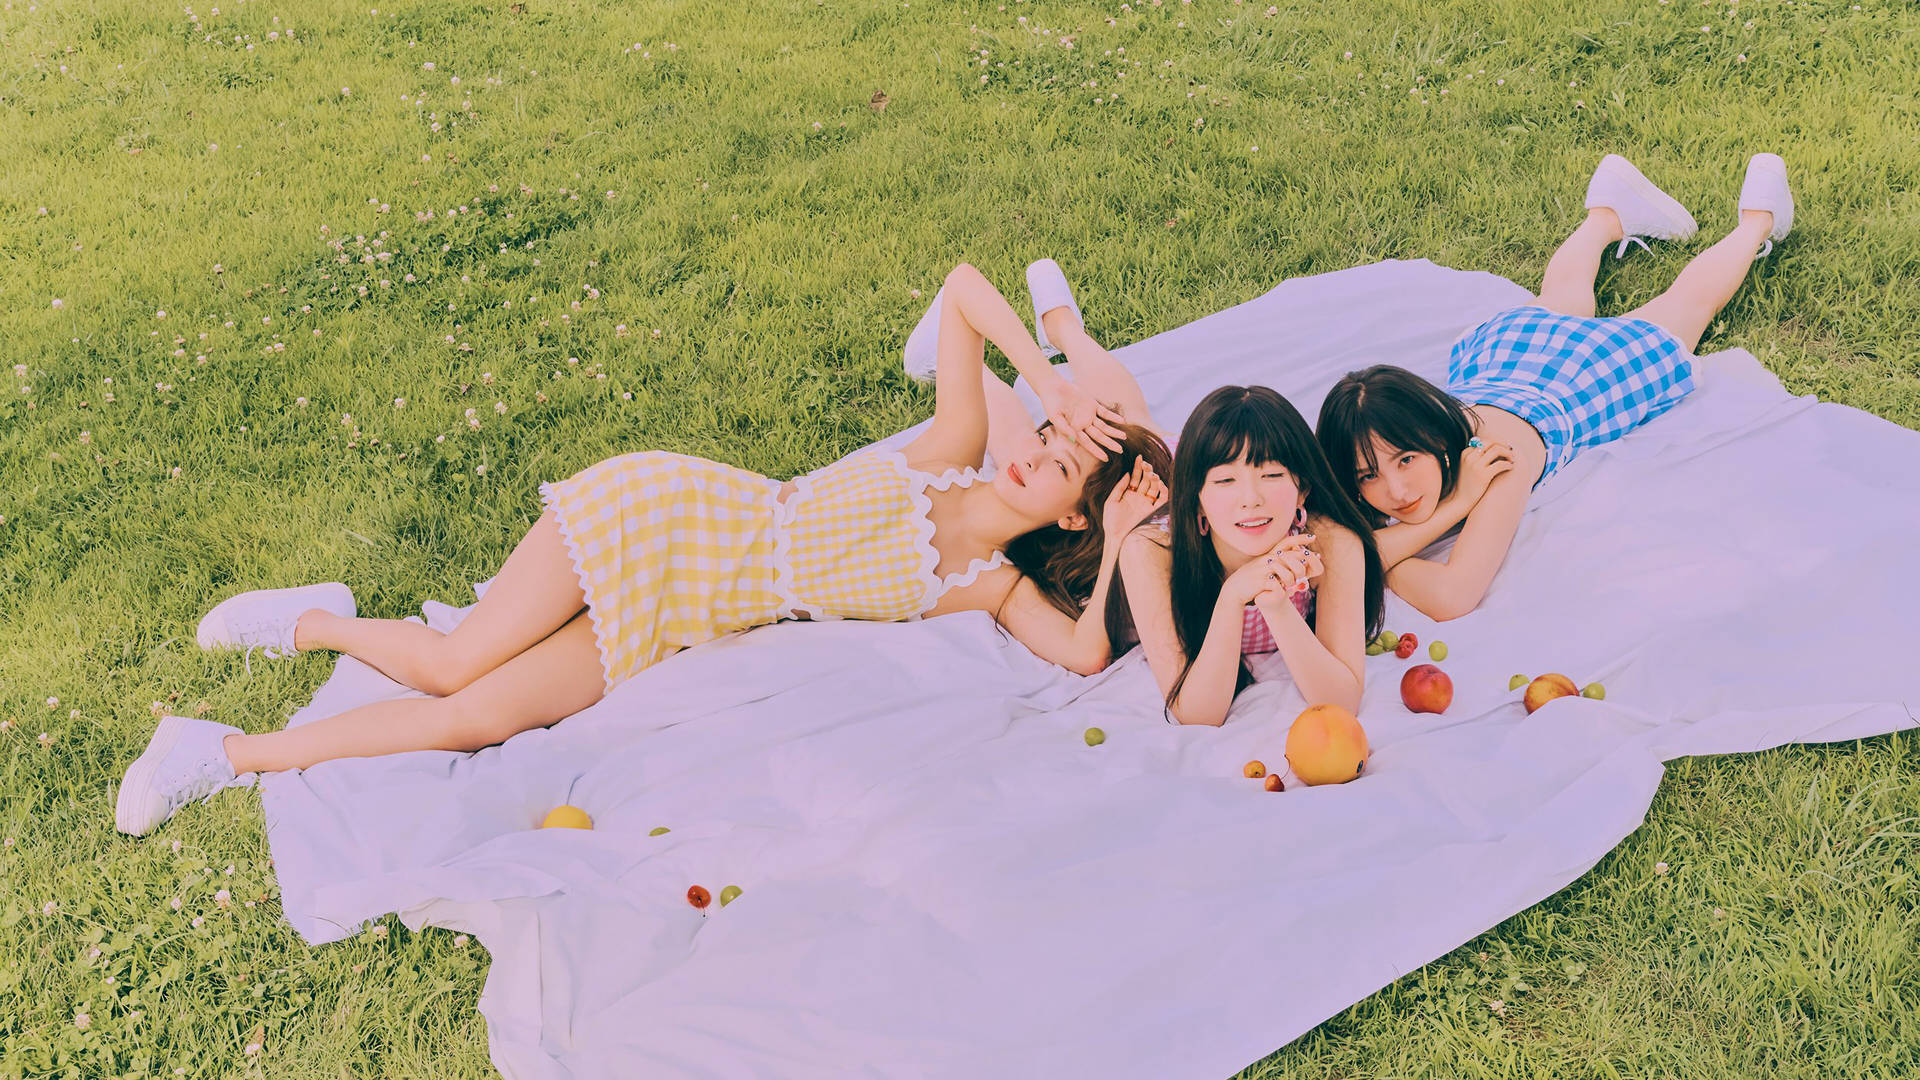 Red Velvet Summer Photoshoot Wallpaper